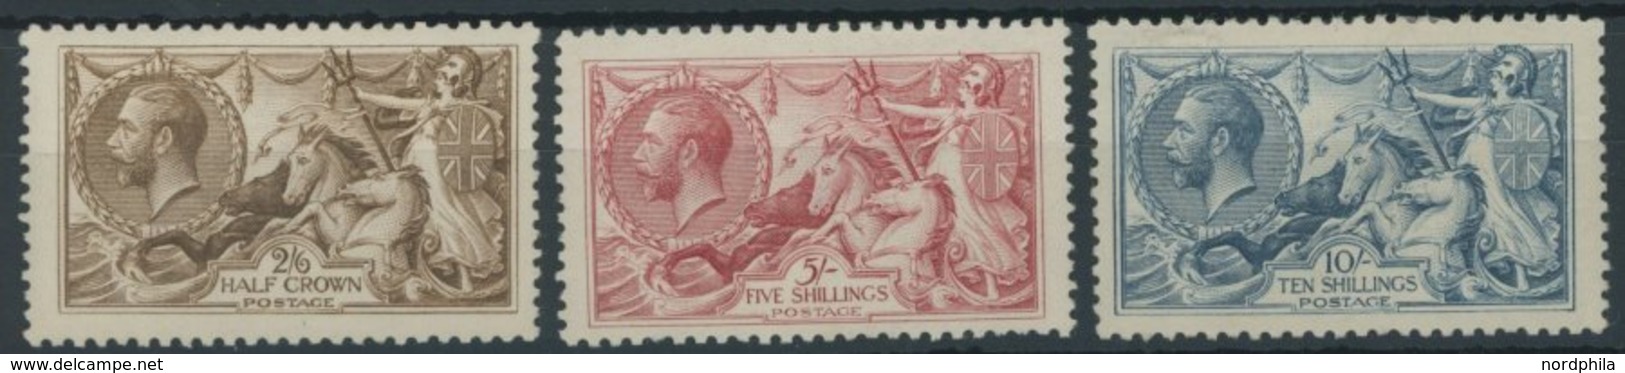 GROSSBRITANNIEN 141-43III *, 1918, Britania Und Seepferde, Bradbury, Falzreste, Prachtsatz, Mi. 500.- - Used Stamps